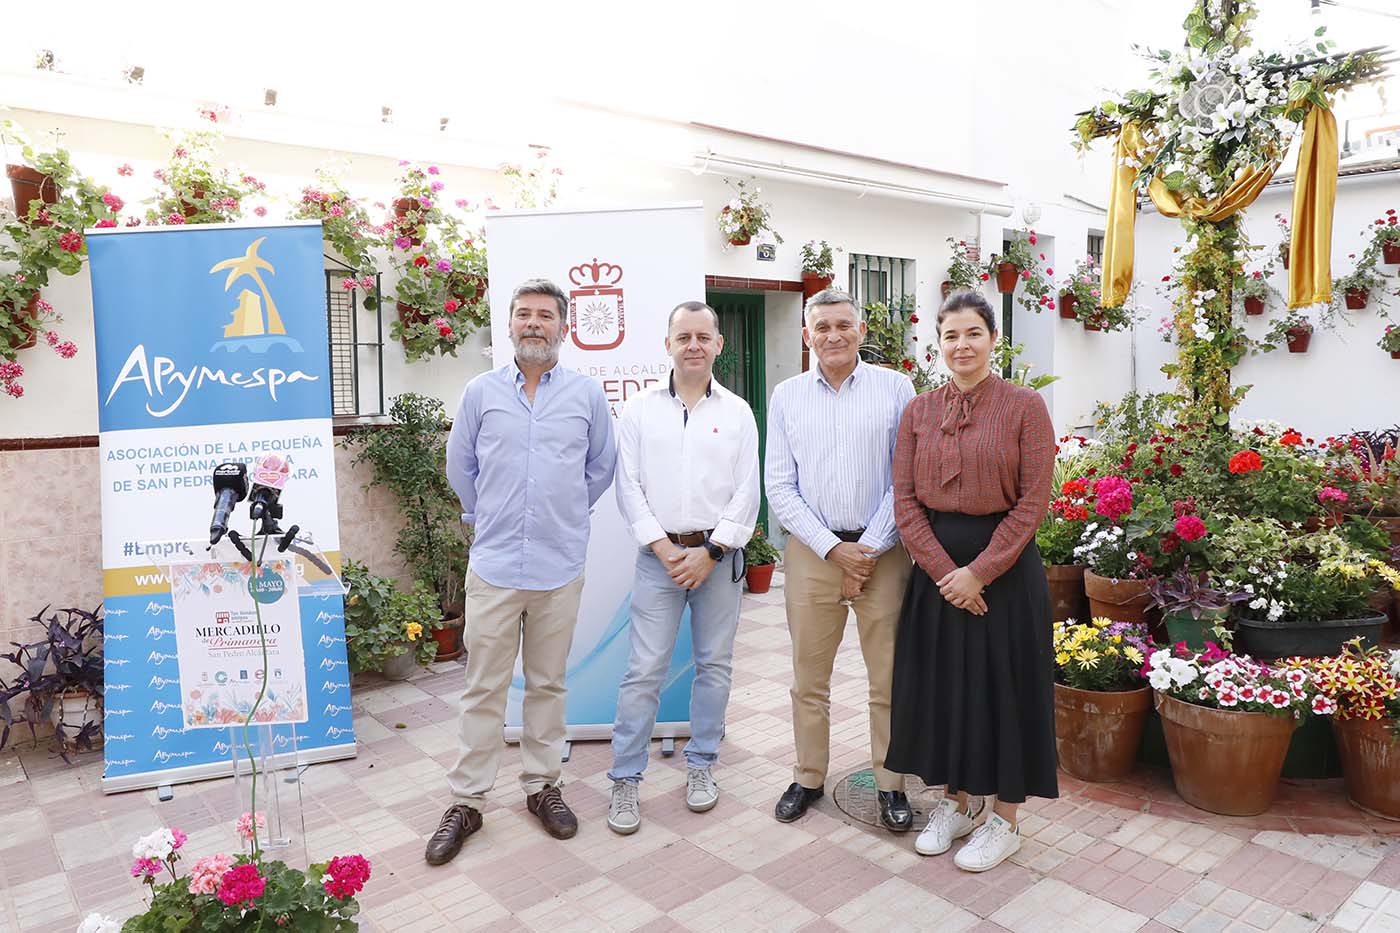 Marbella y San Pedro Alcántara sacarán este sábado 14 de mayo sus comercios a la calle con la celebración de sendos Mercadillos de Primavera